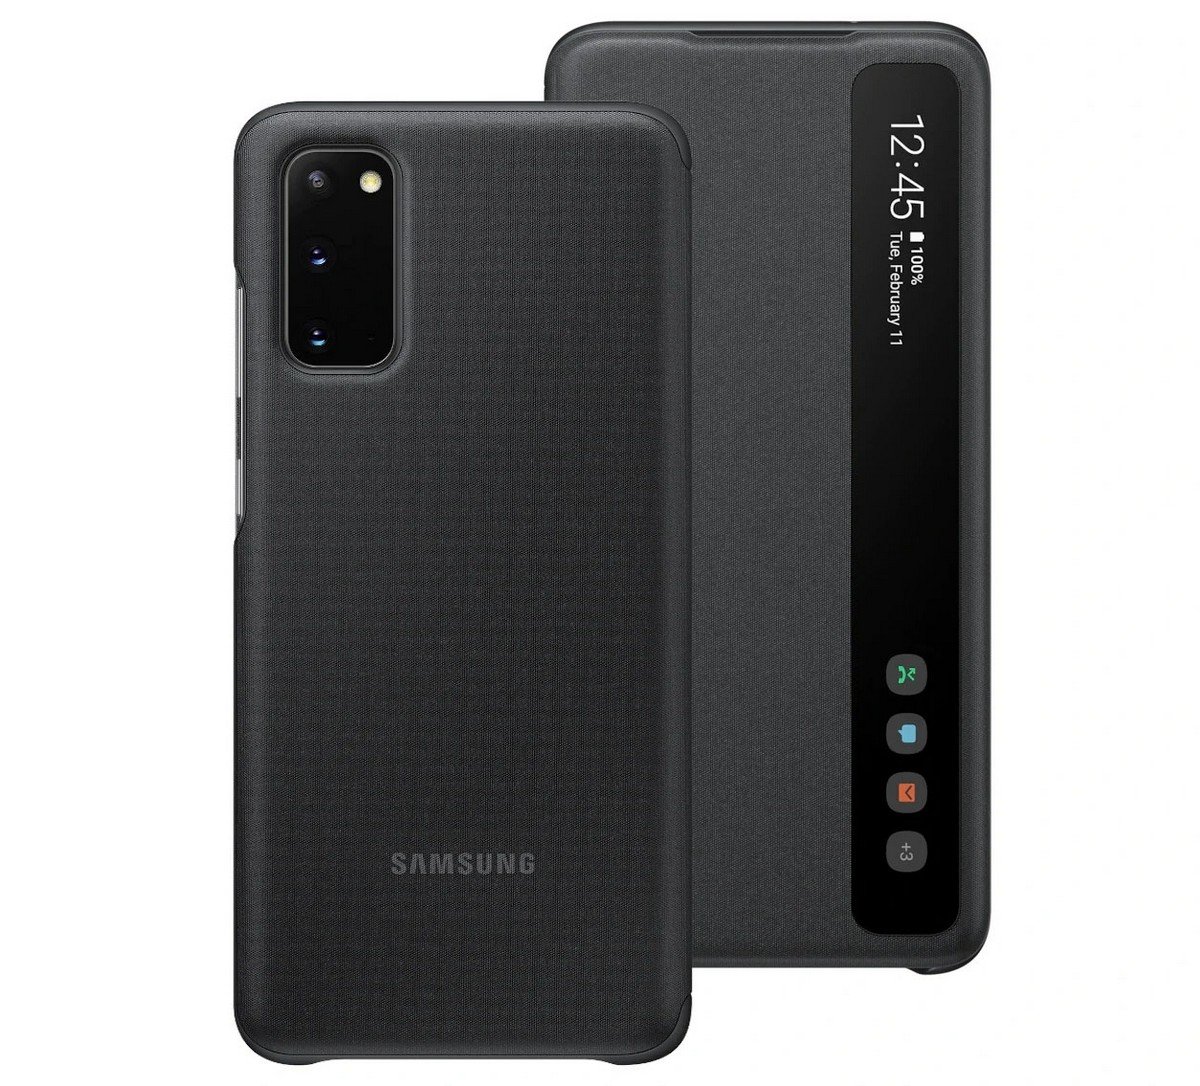 Etui Samsung Clear View Cover Black do Galaxy S20 EF-ZG980CBEGEU. Lżejszy i wygodniejszy.